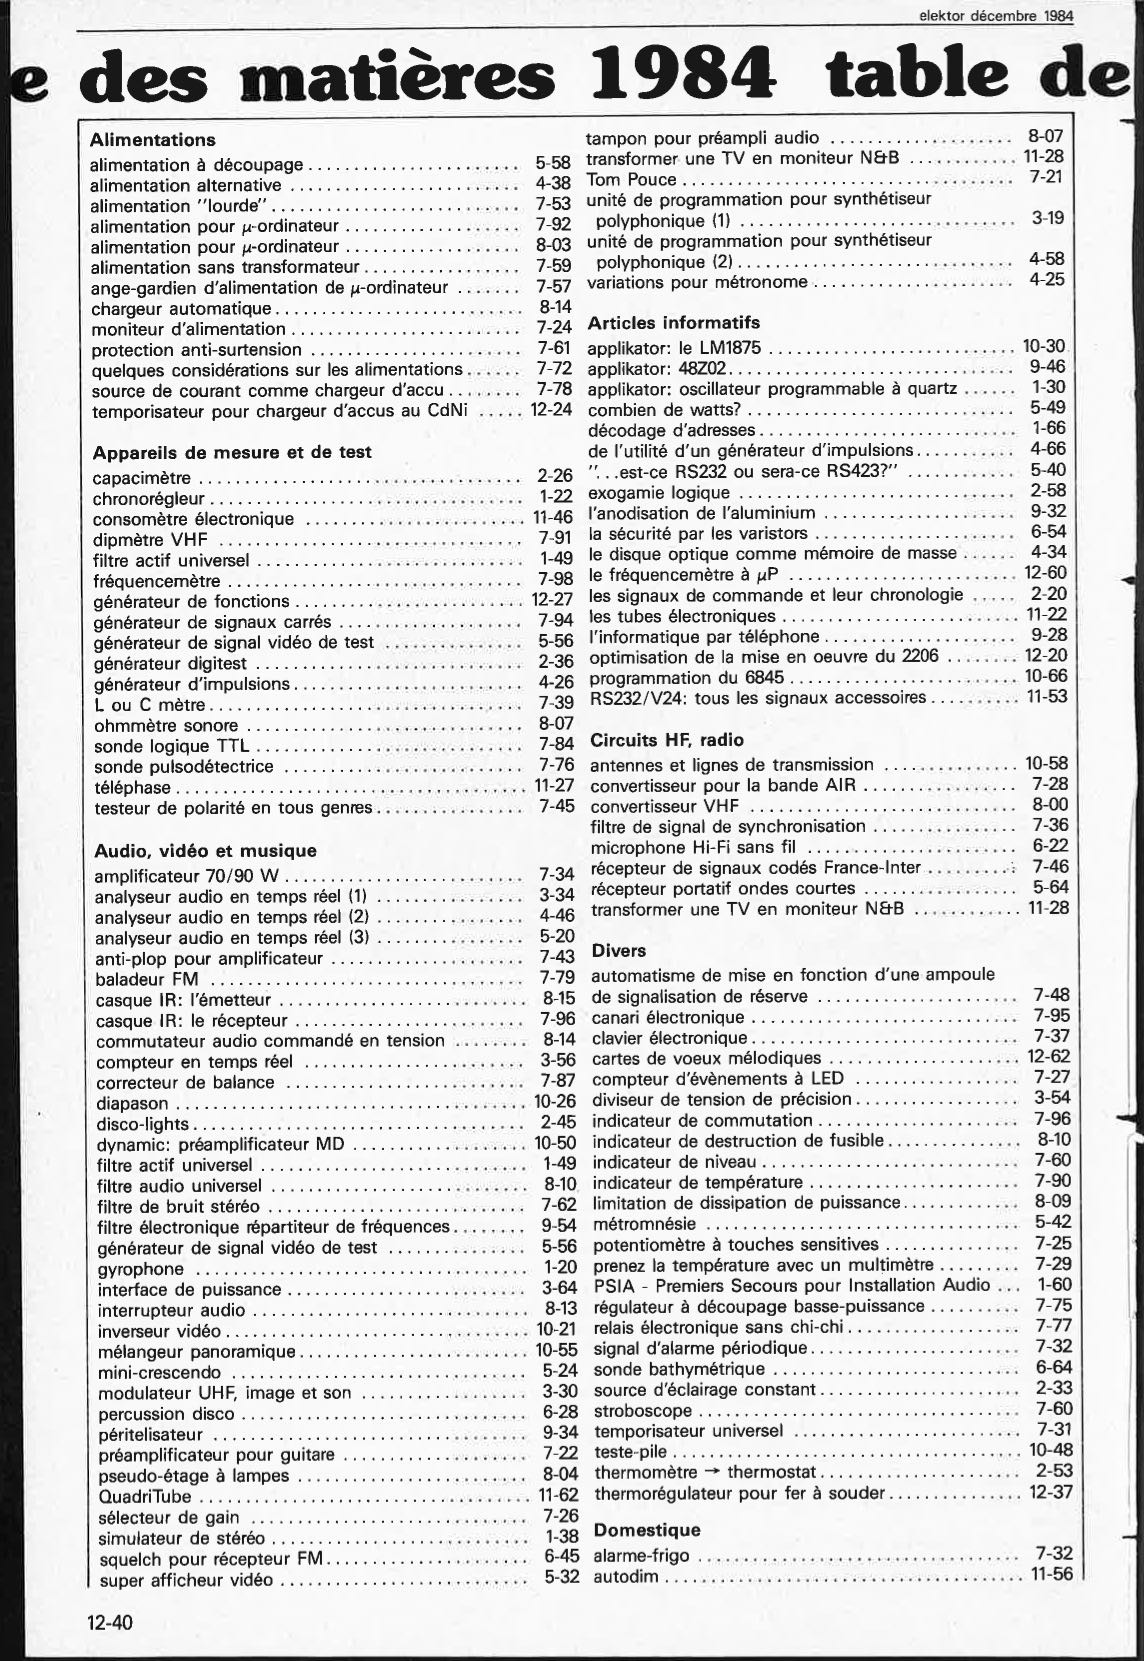 table des matières 1984